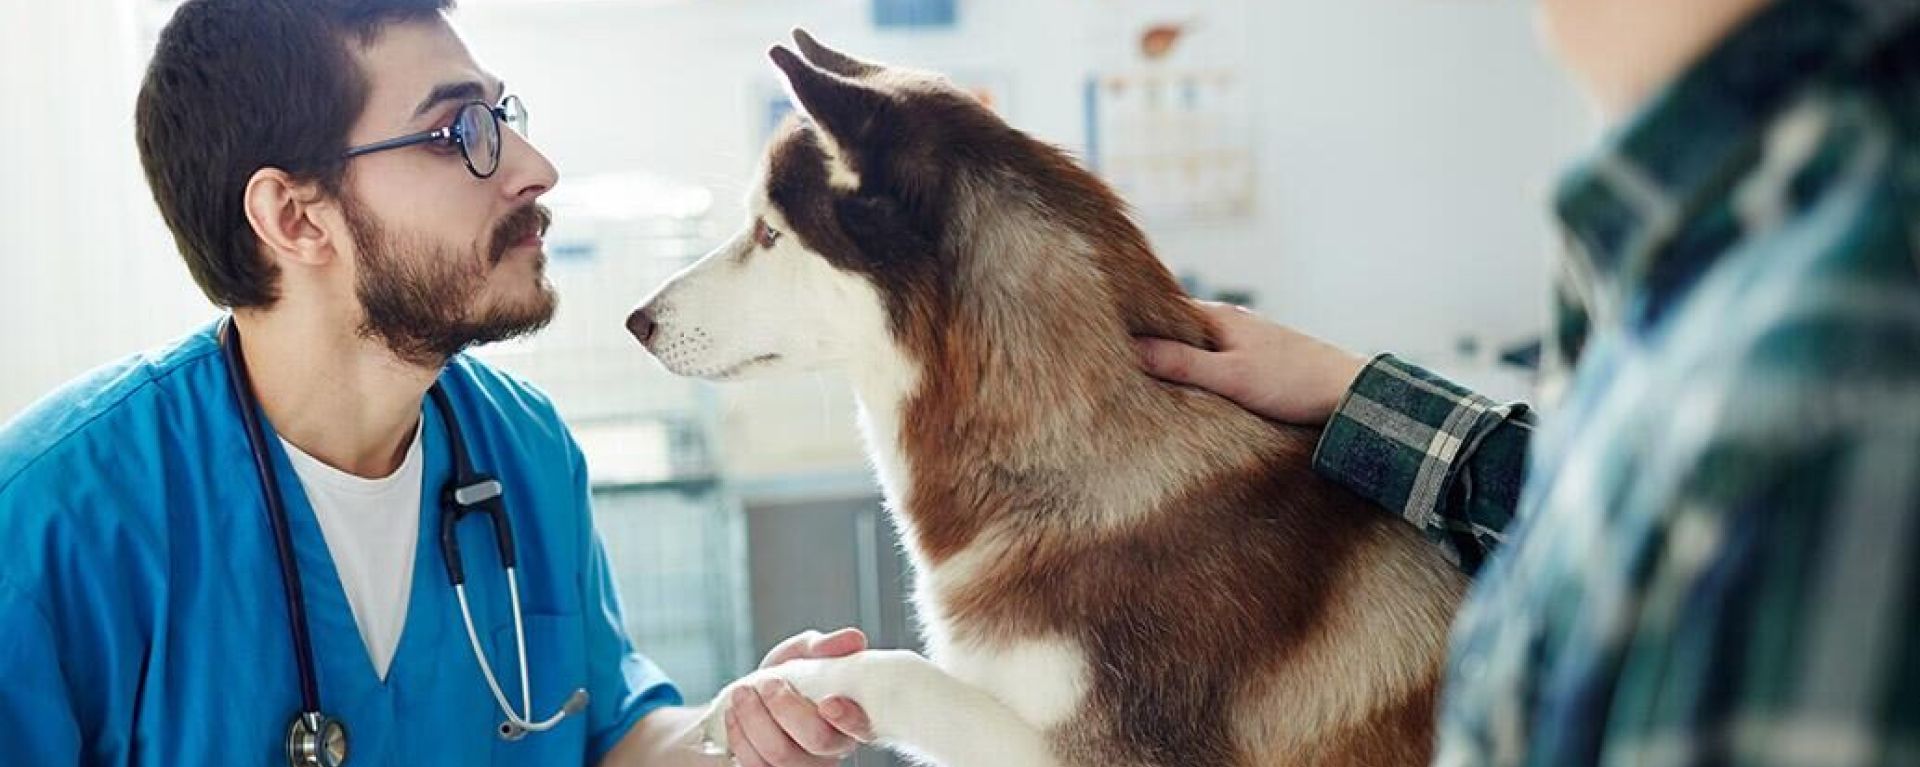 Клиническое наблюдение за состоянием и лечением собаки с идиопатической эпилепсией